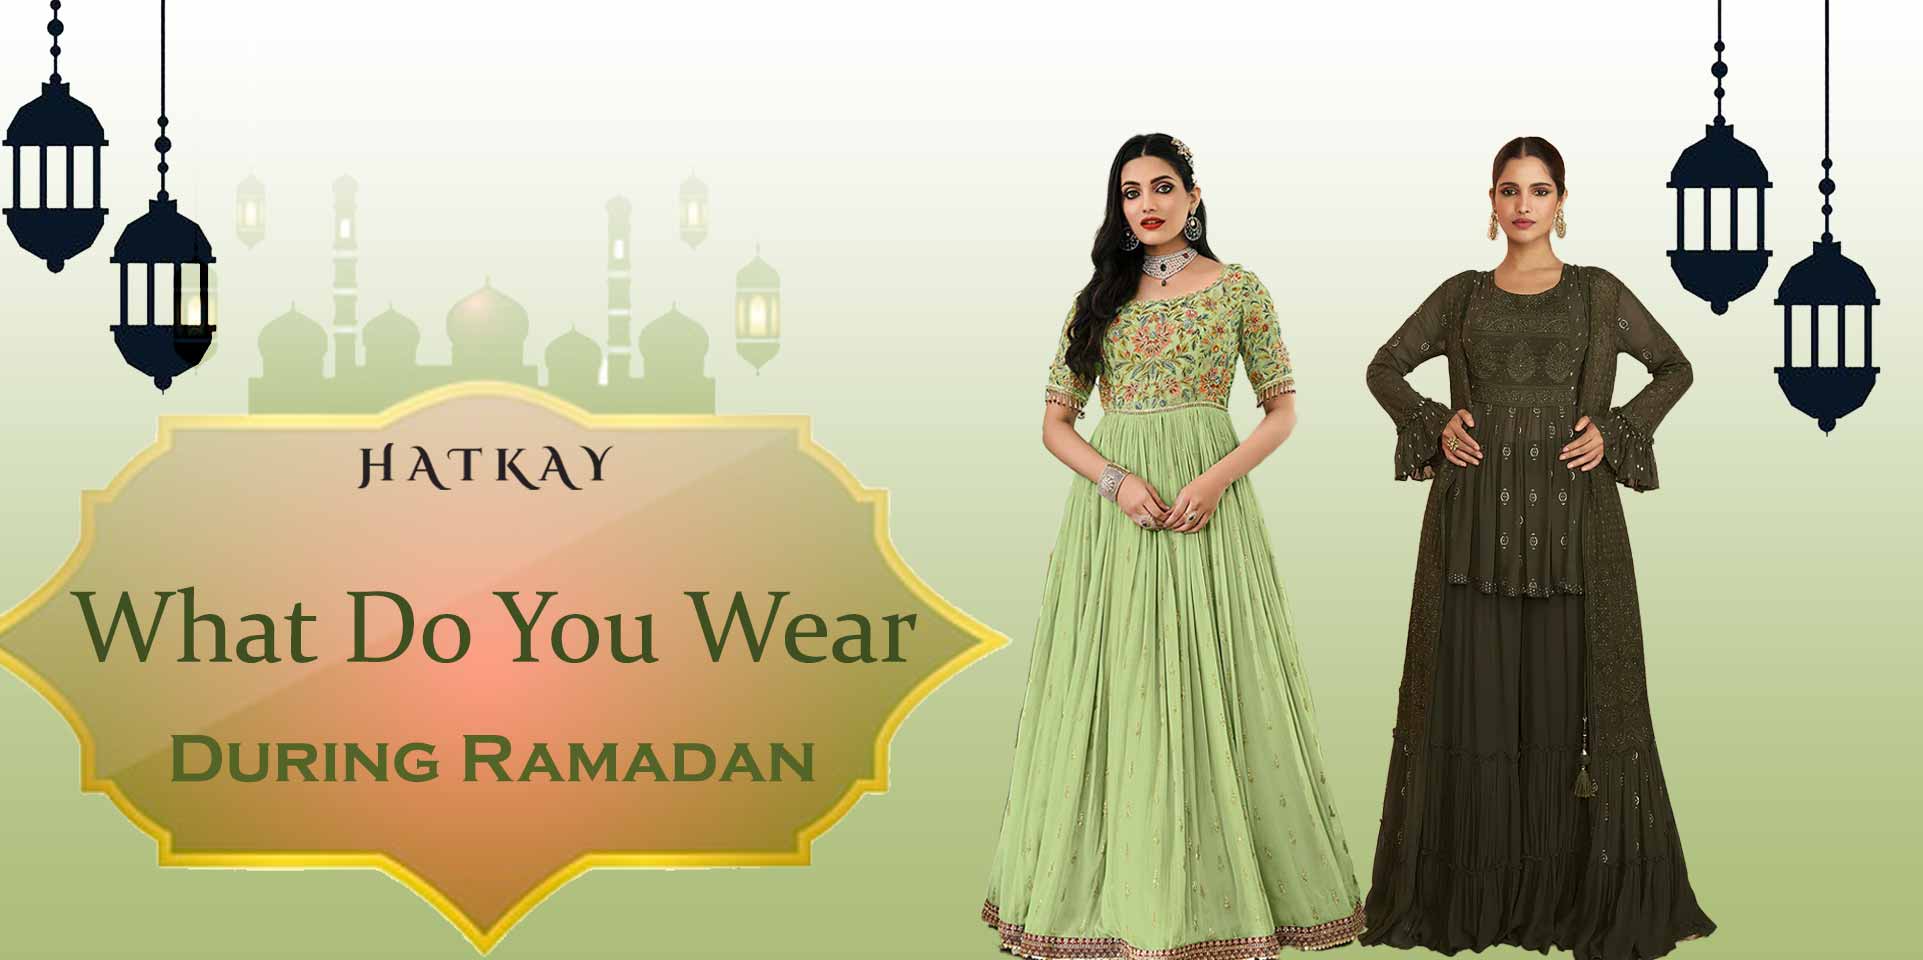 What Do You Wear During Ramadan?